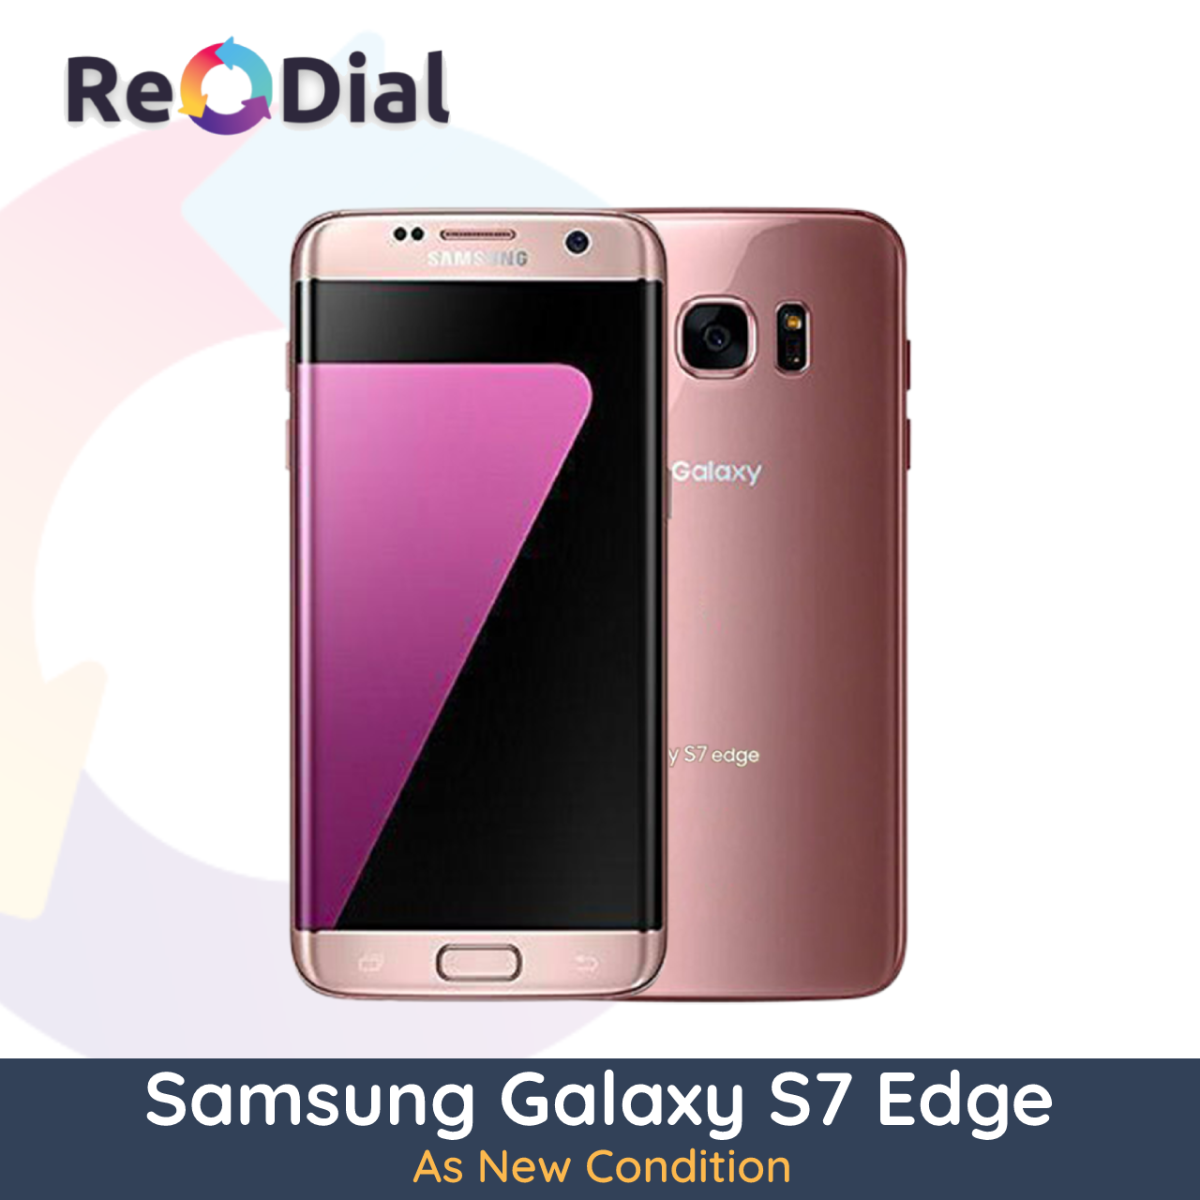 Samsung Galaxy S7 Edge (G935F) - As New (Premium)